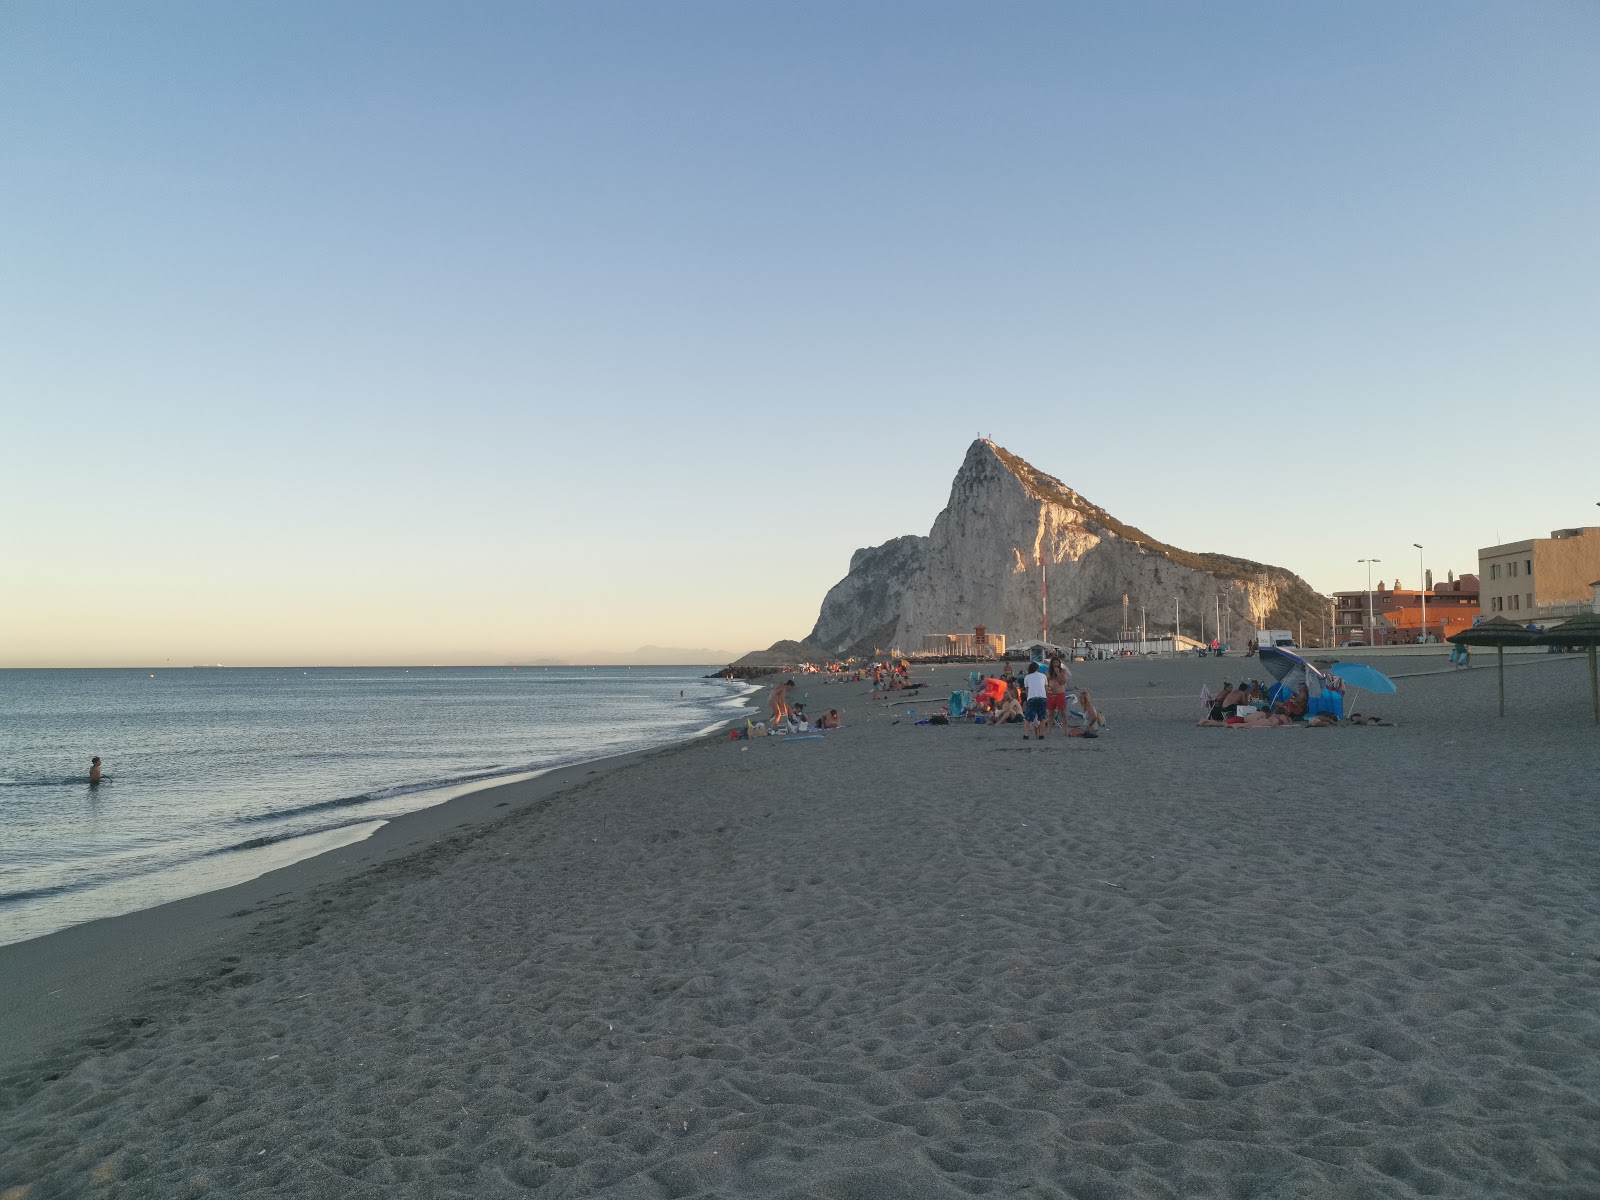 Playa de Levante'in fotoğrafı gri kum yüzey ile